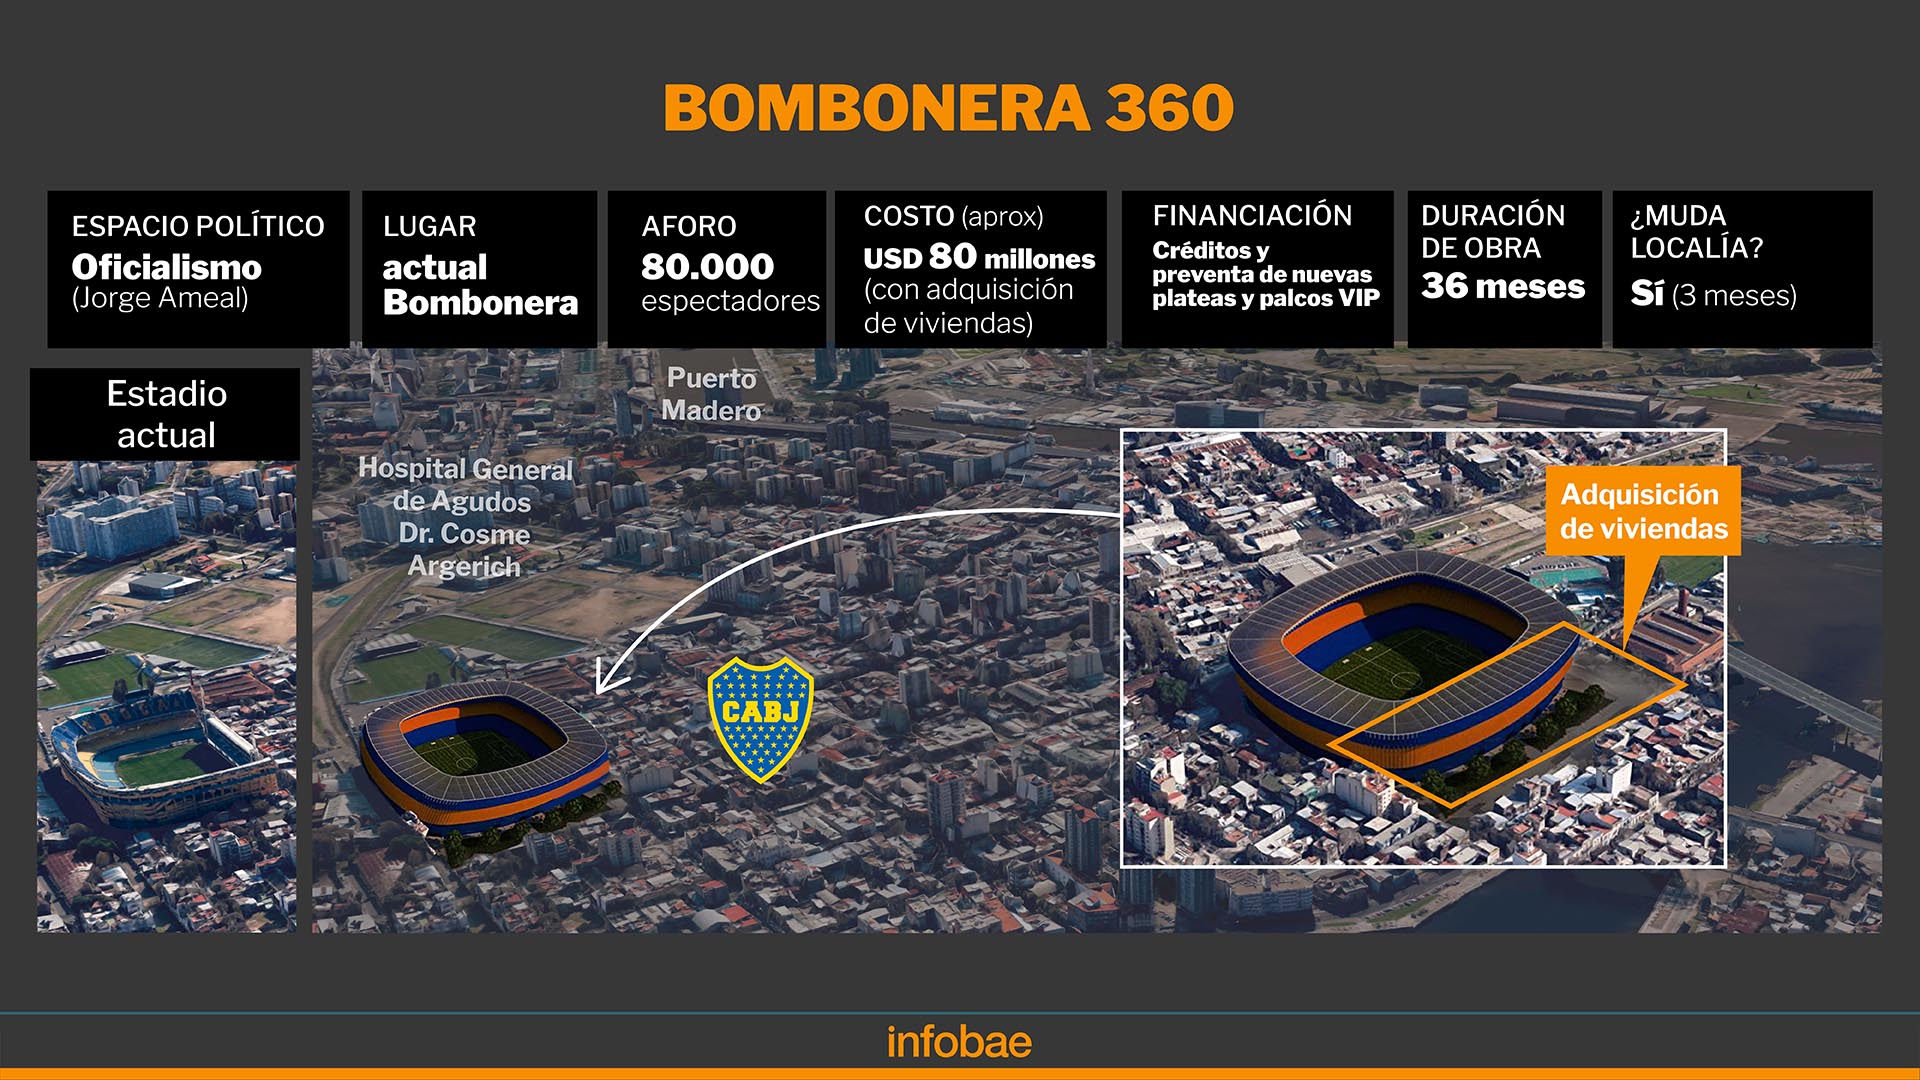 El oficialismo pretende llevar a cabo el Bombonera 360 que prometió en la campaña anterior